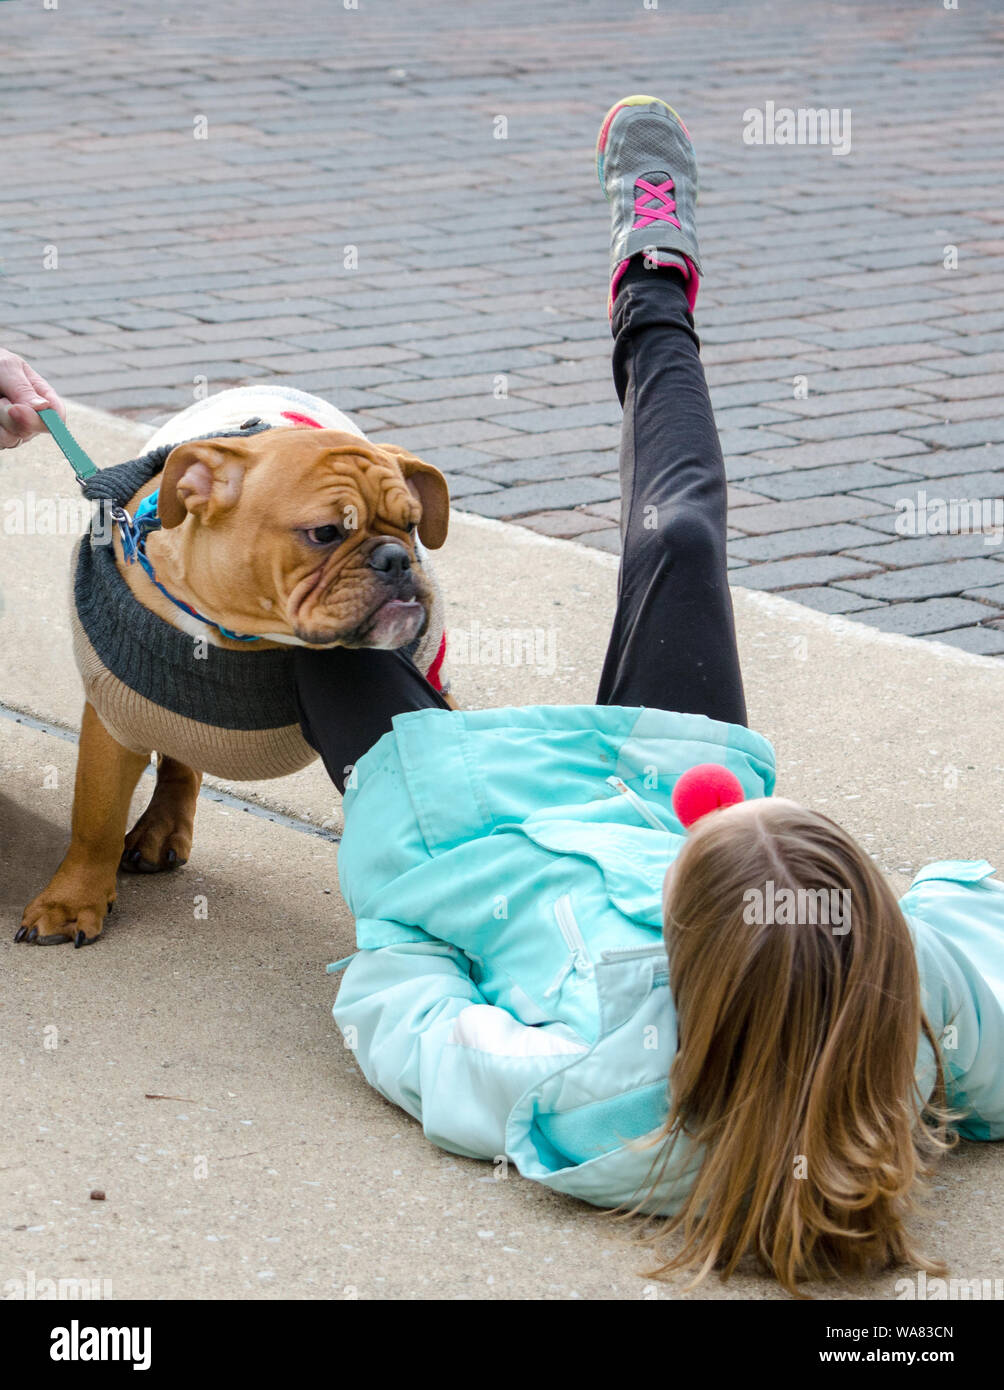 Bull dog renverse petite fille au sol qui porte un nez rouge lors d'un événement Banque D'Images